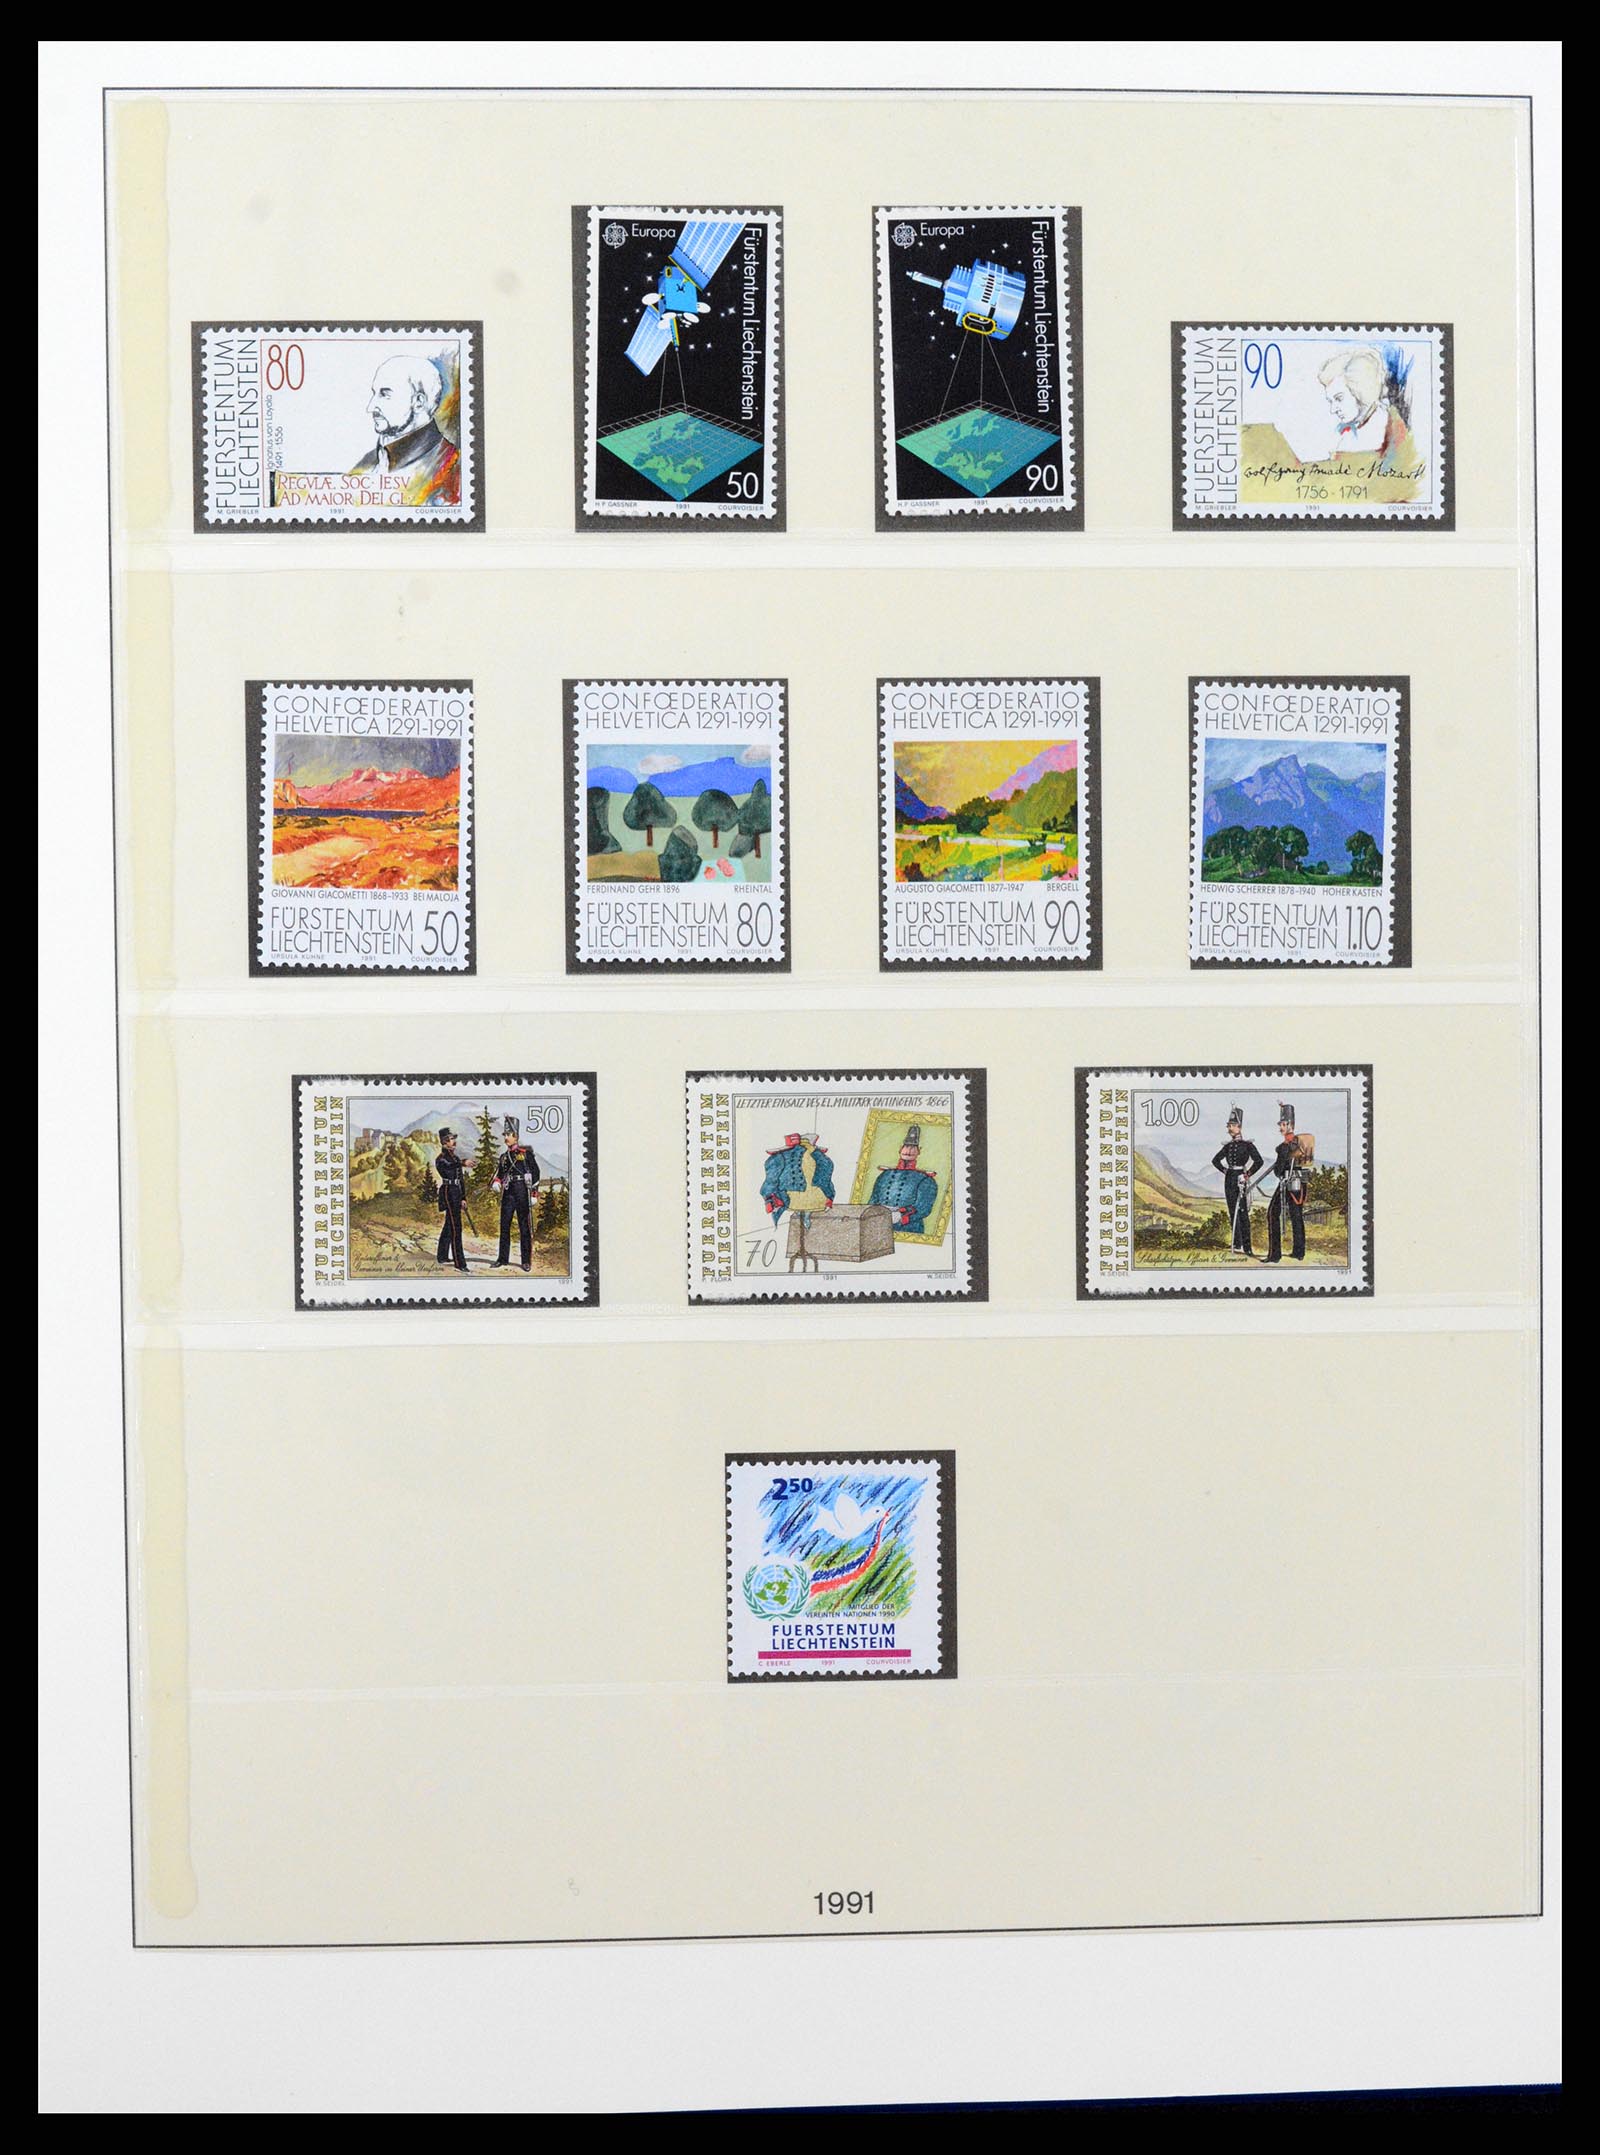 37295 103 - Stamp collection 37295 Liechtenstein 1912-2009.